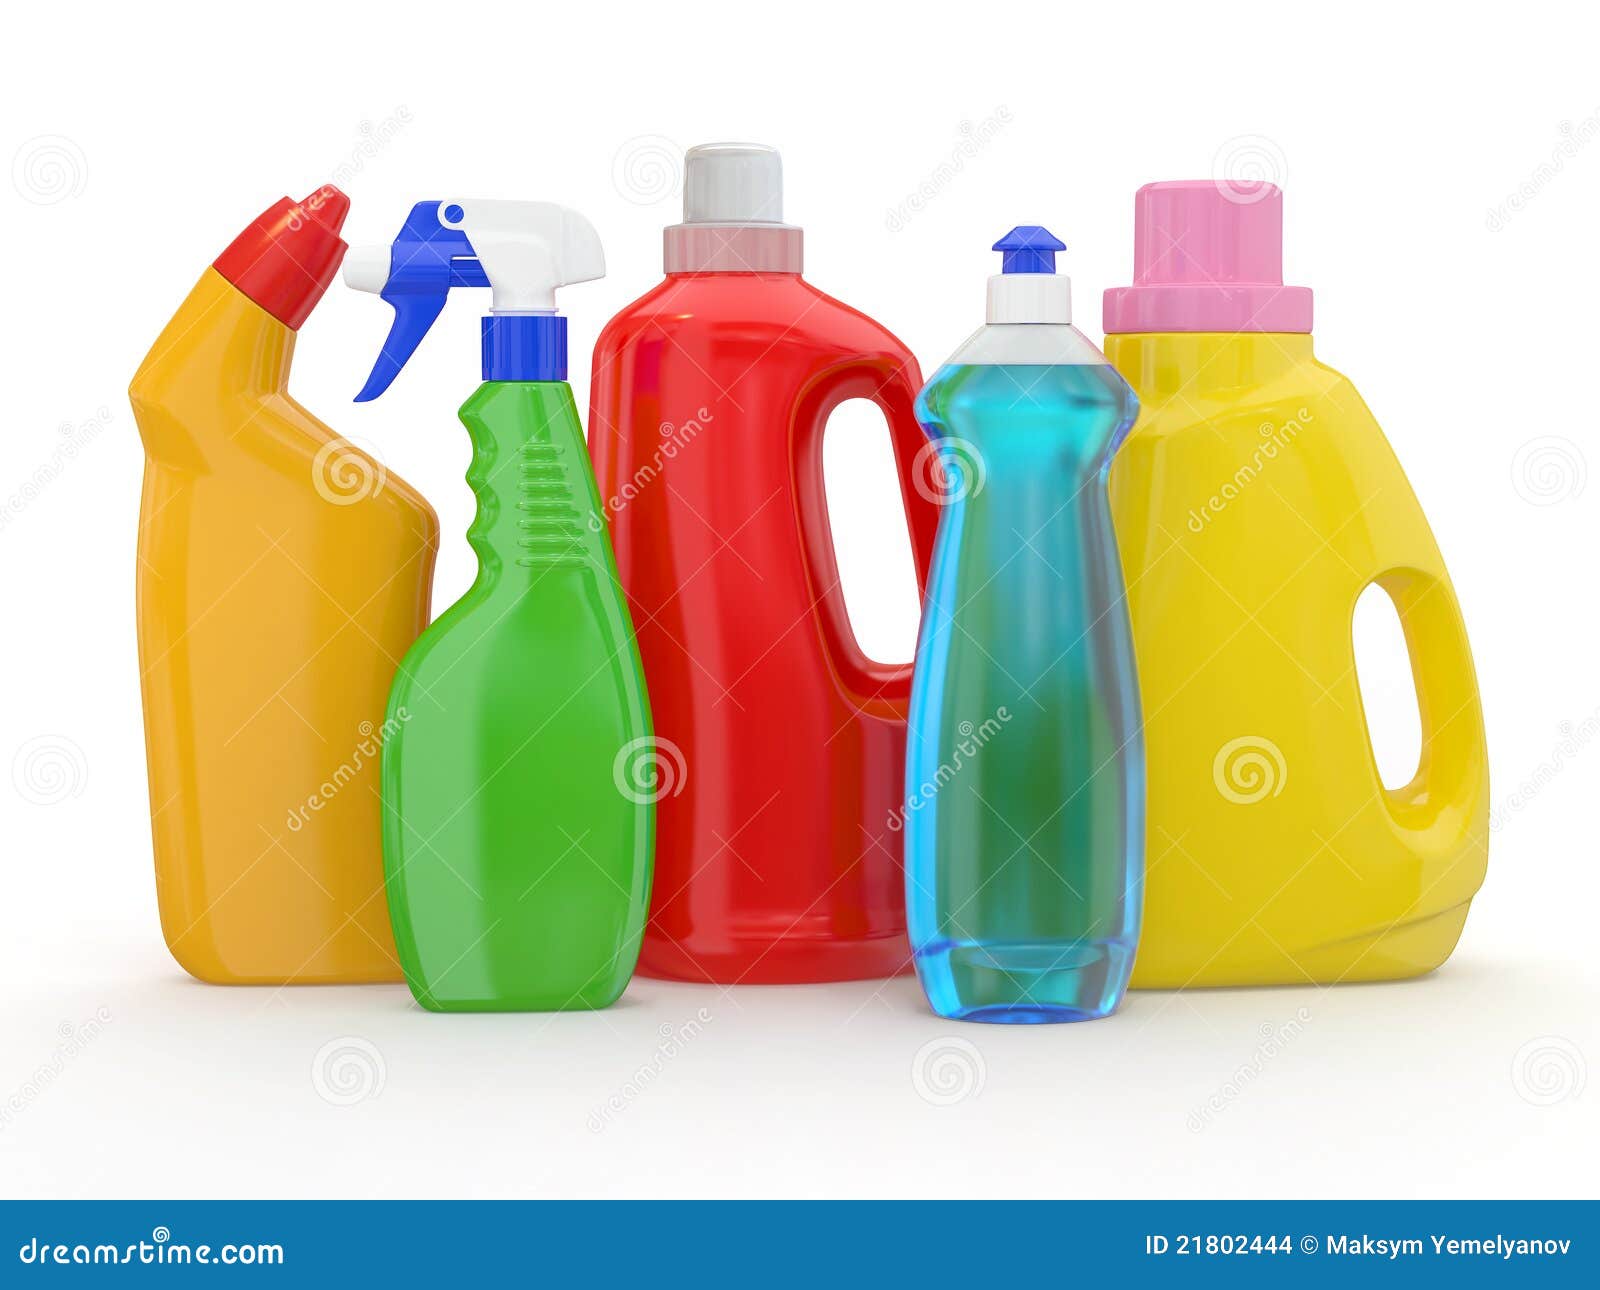 Scovolino per la pulizia di bottiglie e altri elementi tubolari Foto stock  - Alamy